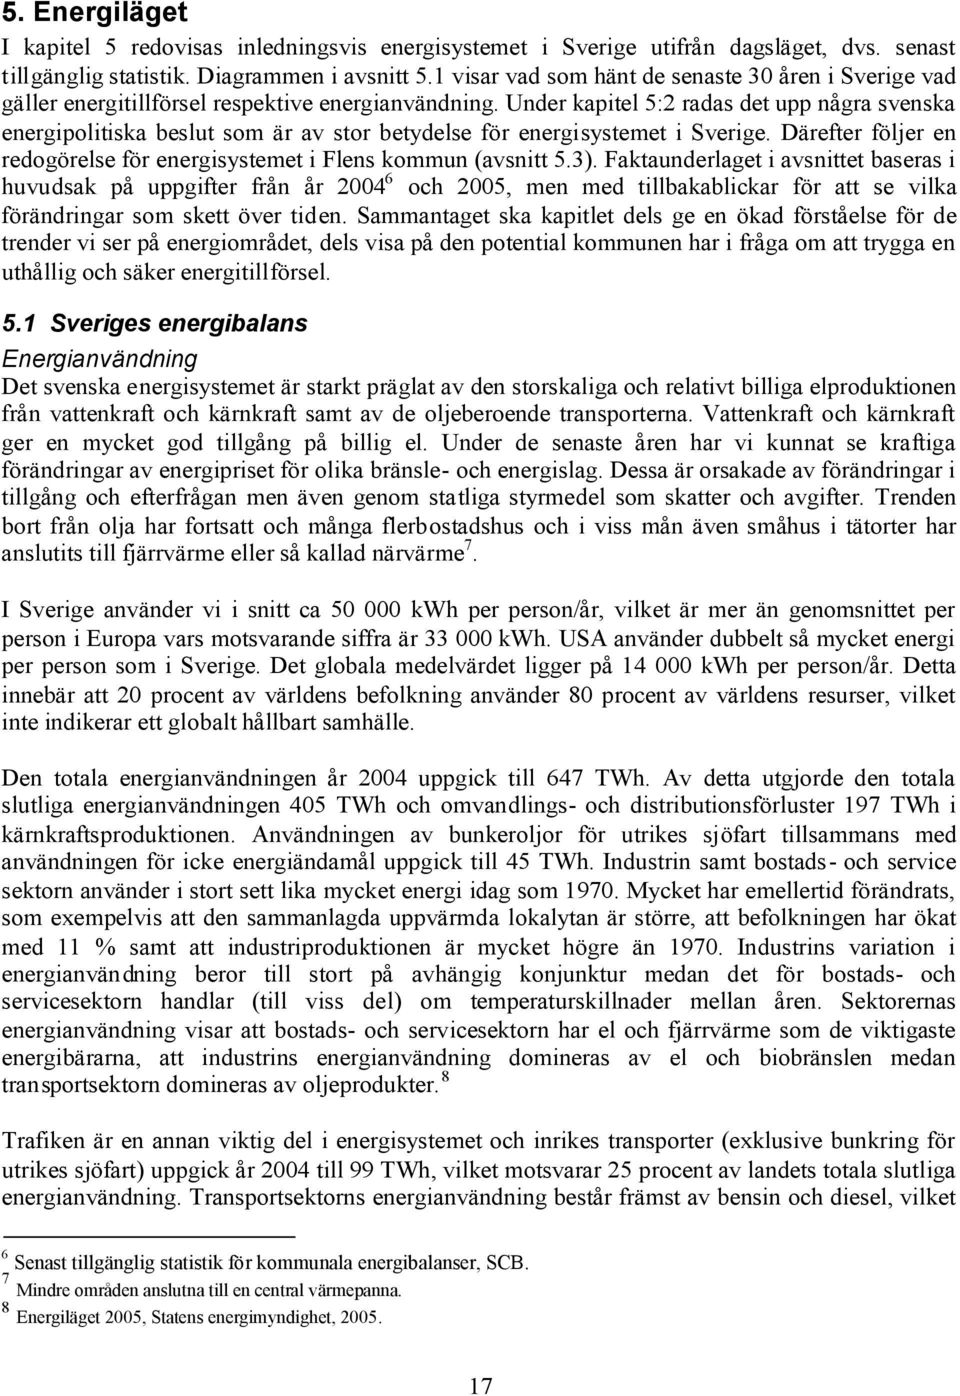 Under kapitel 5:2 radas det upp några svenska energipolitiska beslut som är av stor betydelse för energisystemet i Sverige. Därefter följer en redogörelse för energisystemet i Flens kommun (avsnitt 5.